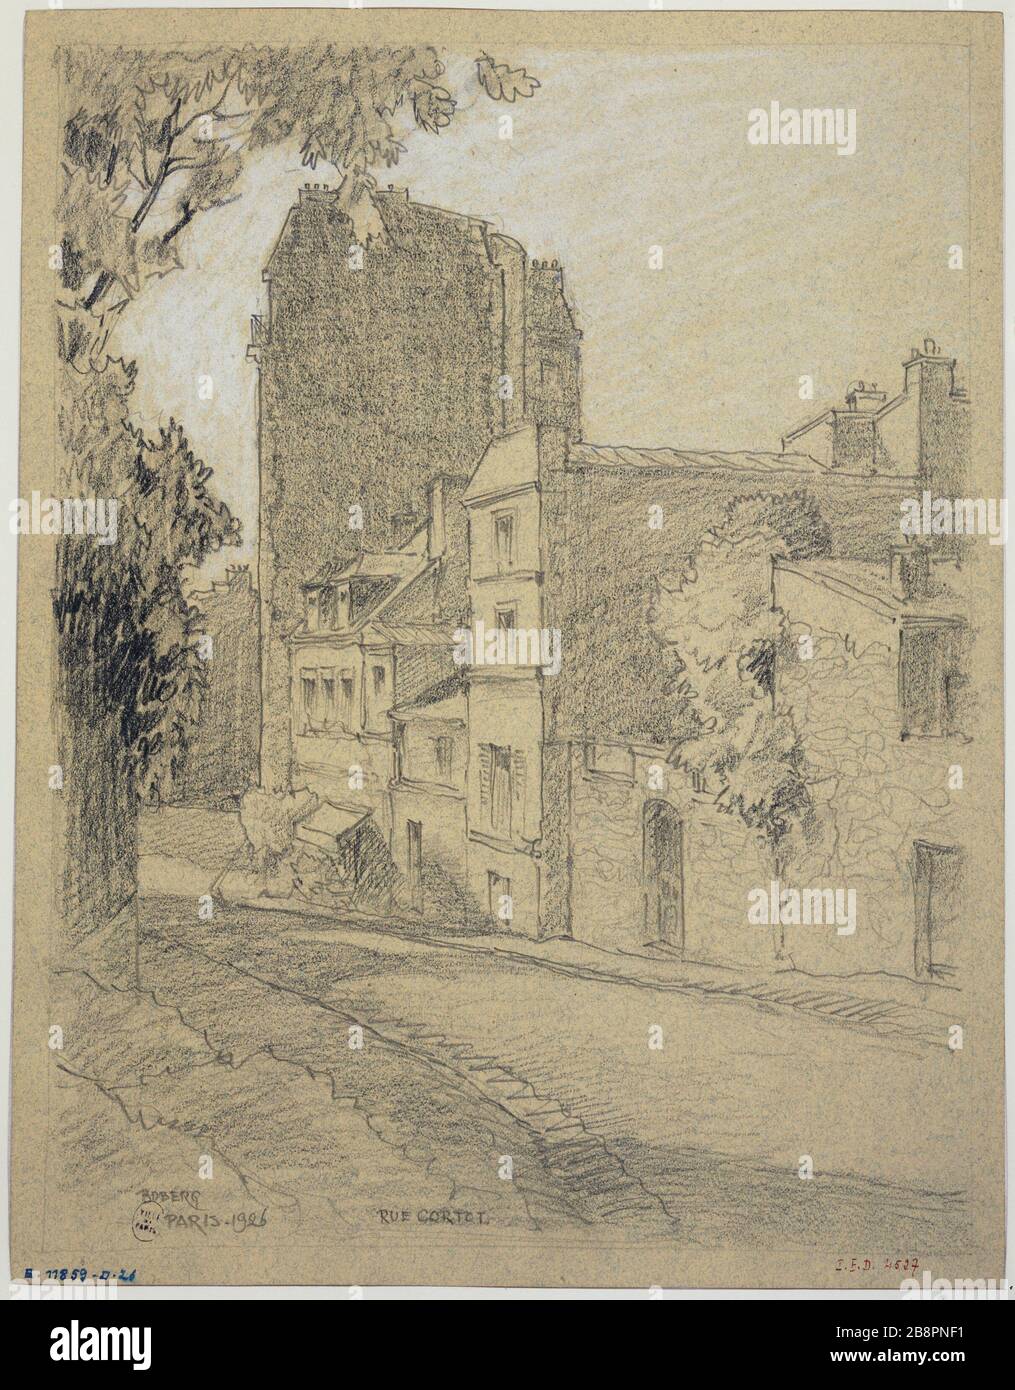 Rue Cortot, Montmartre, 1926 Gustave Ferdinand Boberg (1860-1946), architecte suédois. Rue Cortot, à Montmartre. Crayon rehaut de craie blanche. Paris (XVIIIème arr.), 1926. Paris, musée Carnavalet. Stock Photo